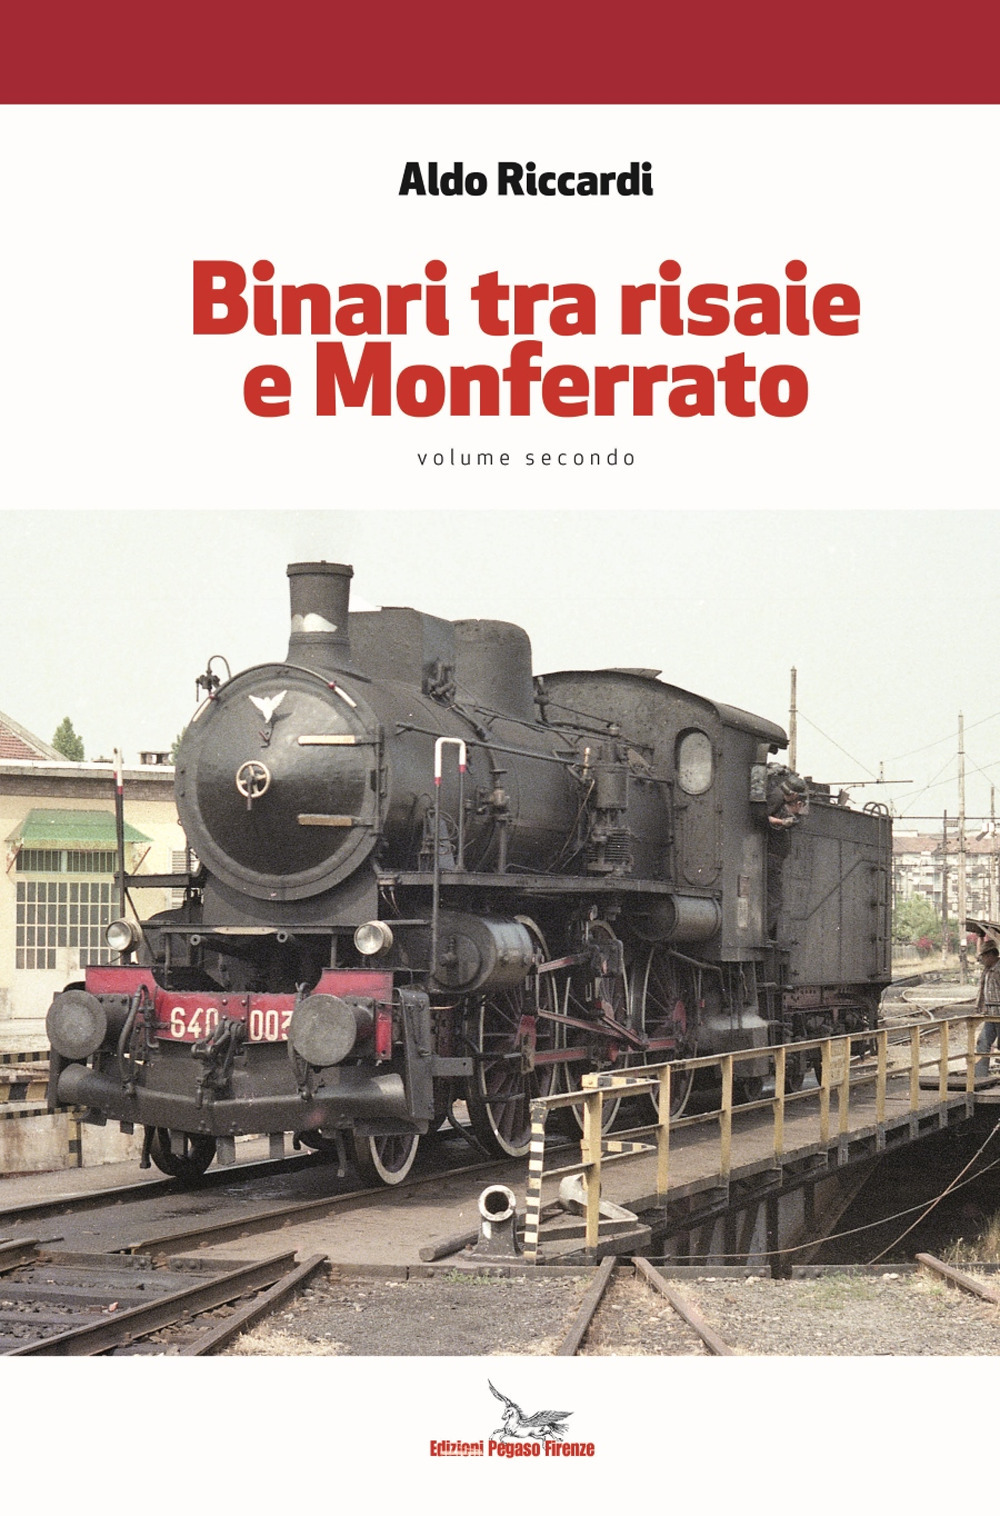 Libri Aldo Riccardi - Binari Tra Risaie E Monferrato. Con Contenuto Digitale Per Download Vol 02 NUOVO SIGILLATO, EDIZIONE DEL 11/11/2021 SUBITO DISPONIBILE